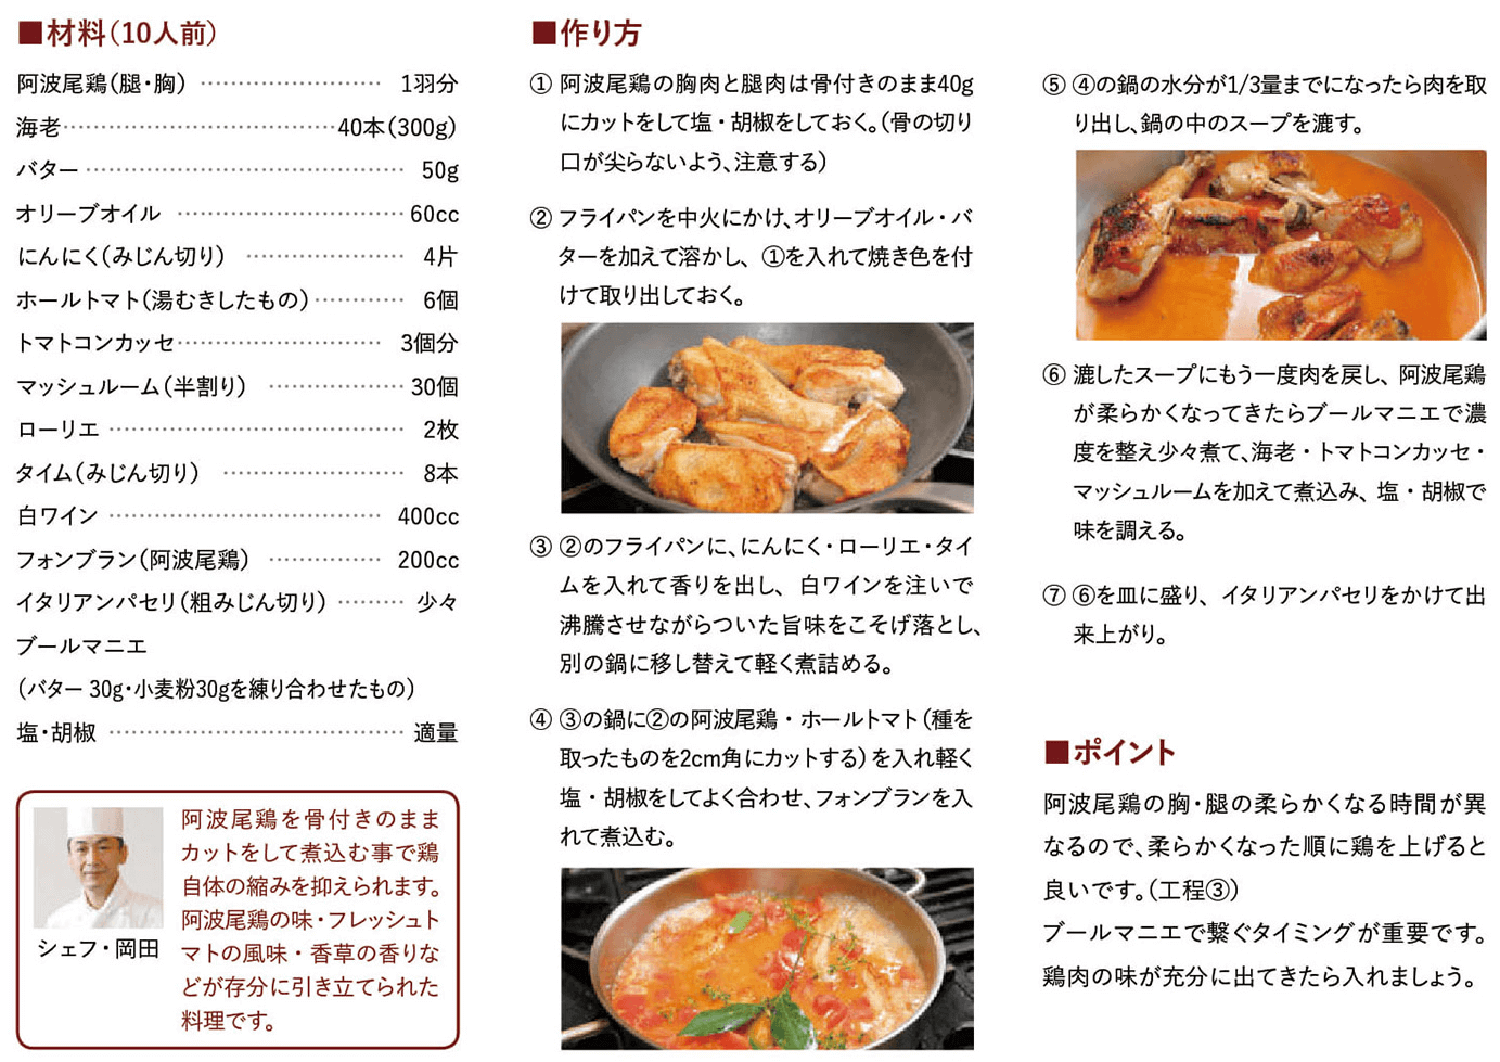 阿波尾鶏のトマト煮込み レシピ